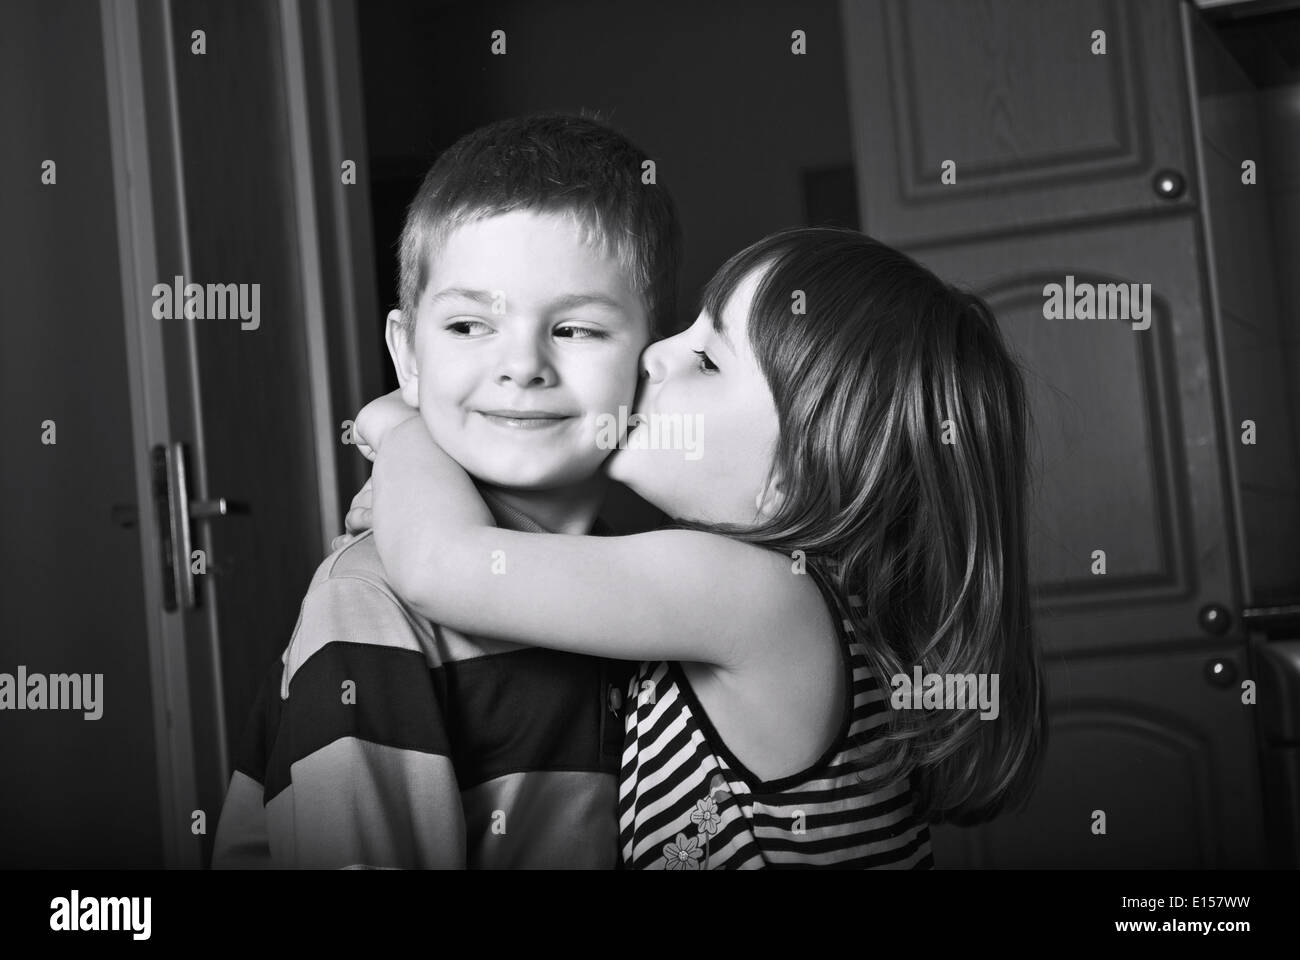 Adorable little girl kissing a boy Stock Photo